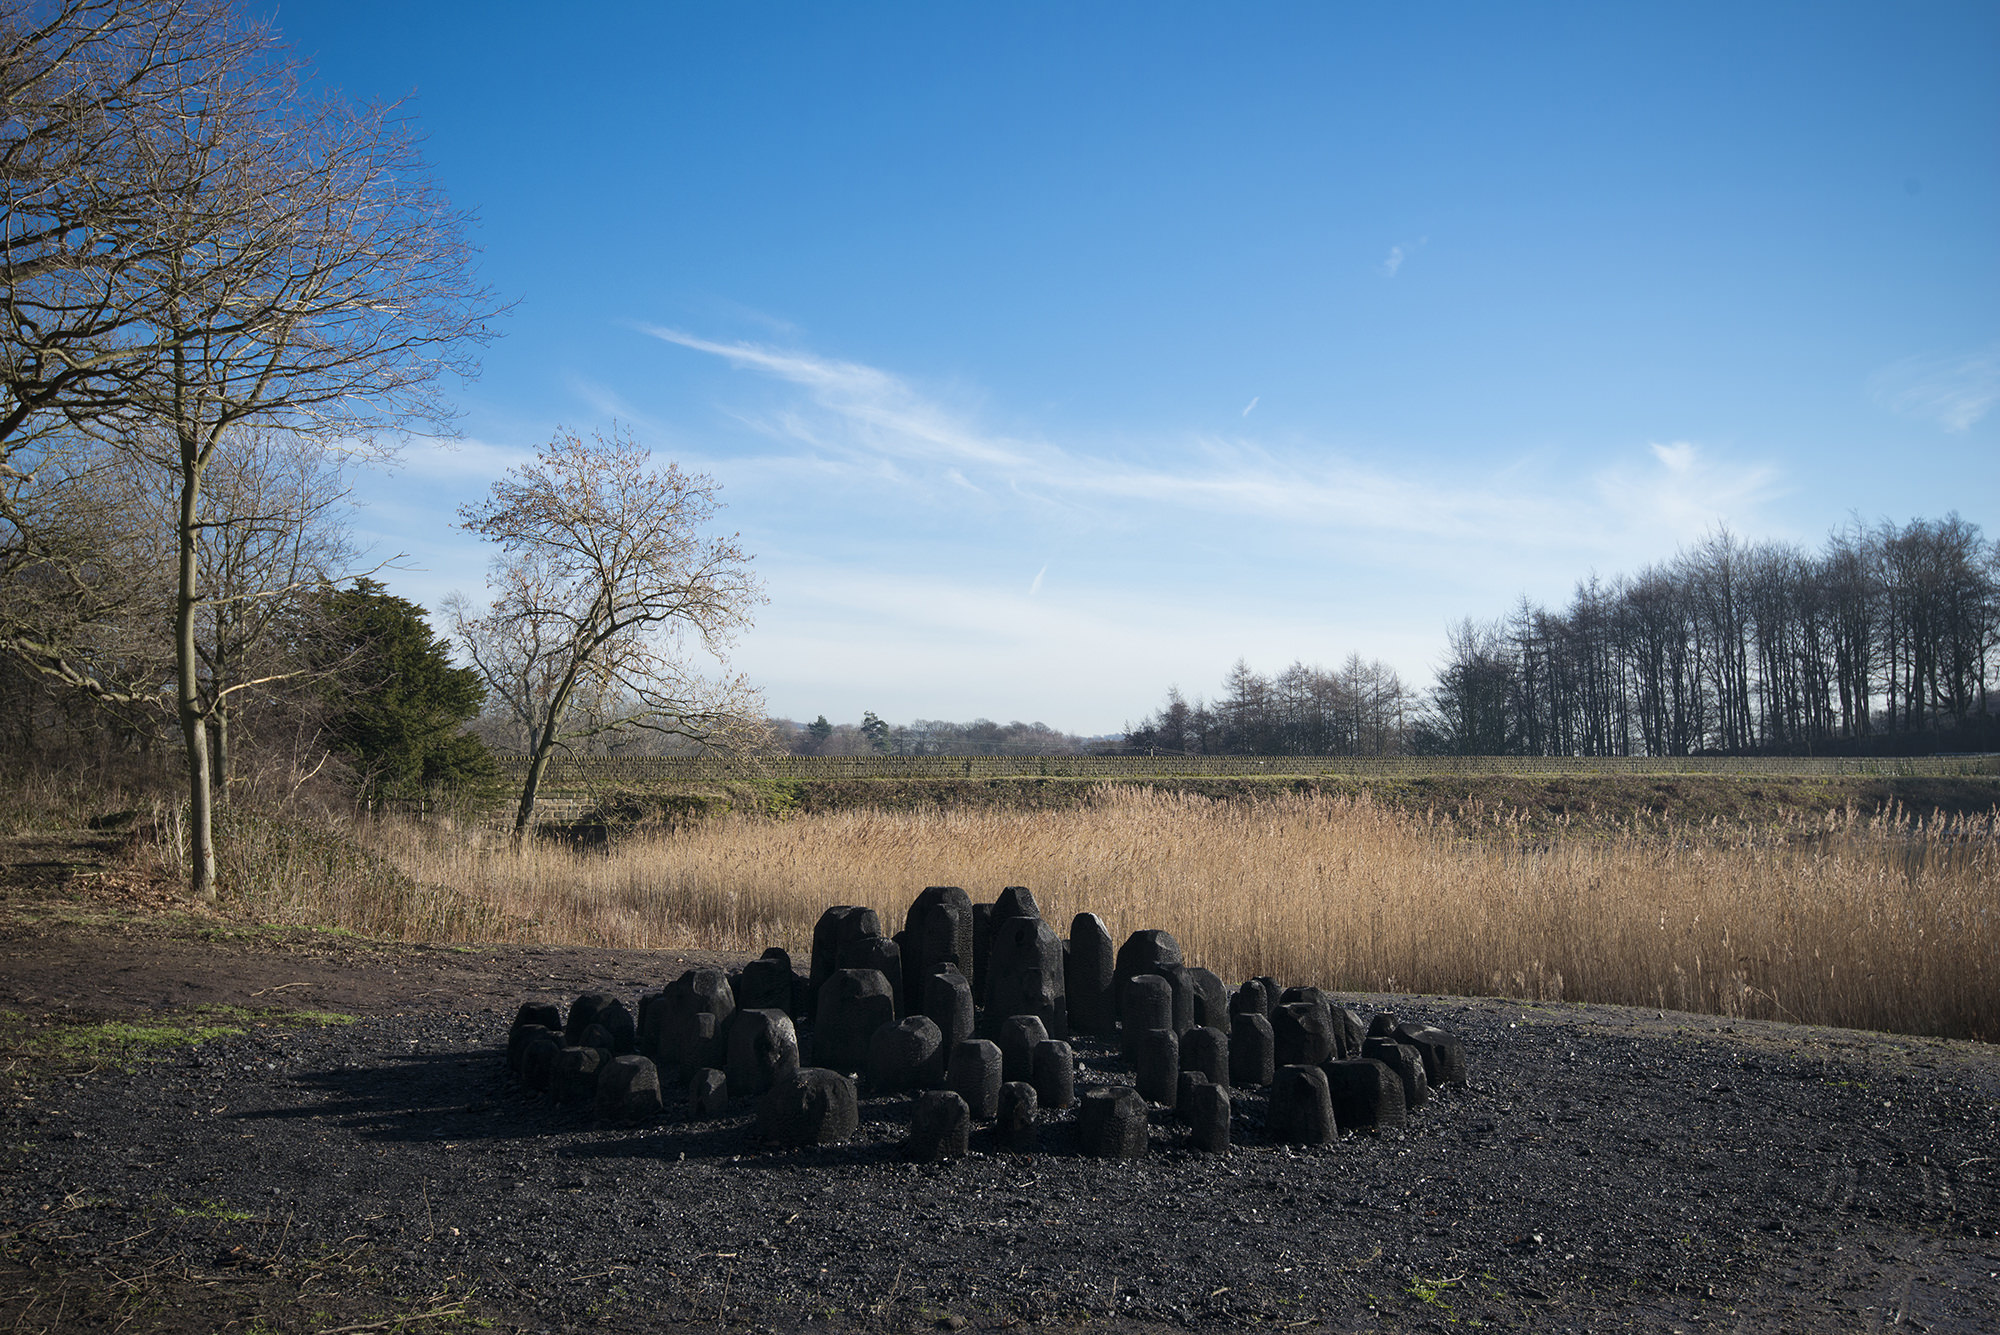 David Nash Black Mound 2013 at Yorkshire Sculpture Park